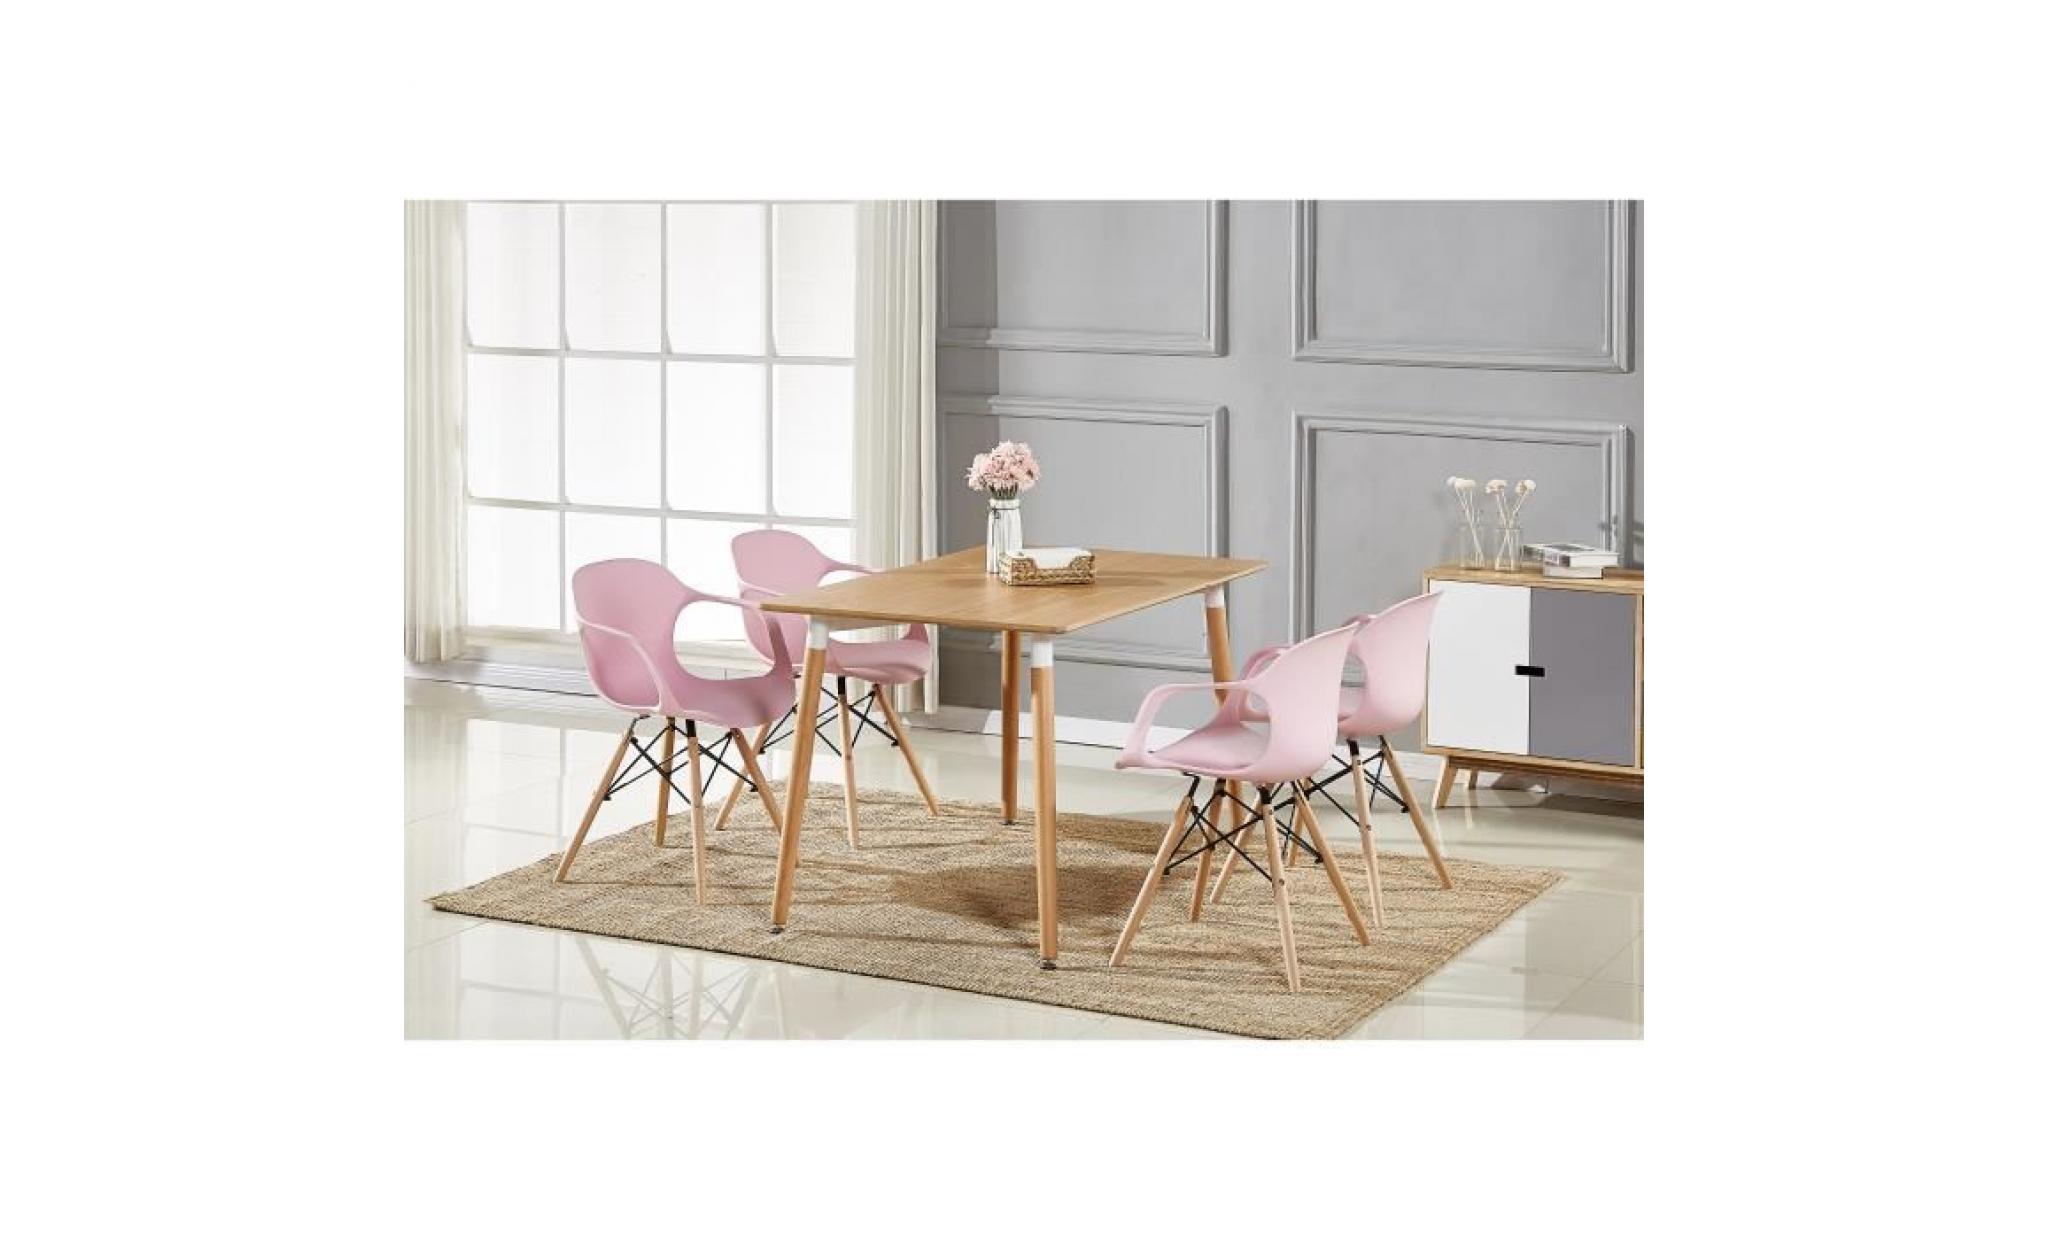 table à manger effet chêne + 4 chaises modernes roses   salle à manger, salon, cuisine   design contemporain   alecia halo